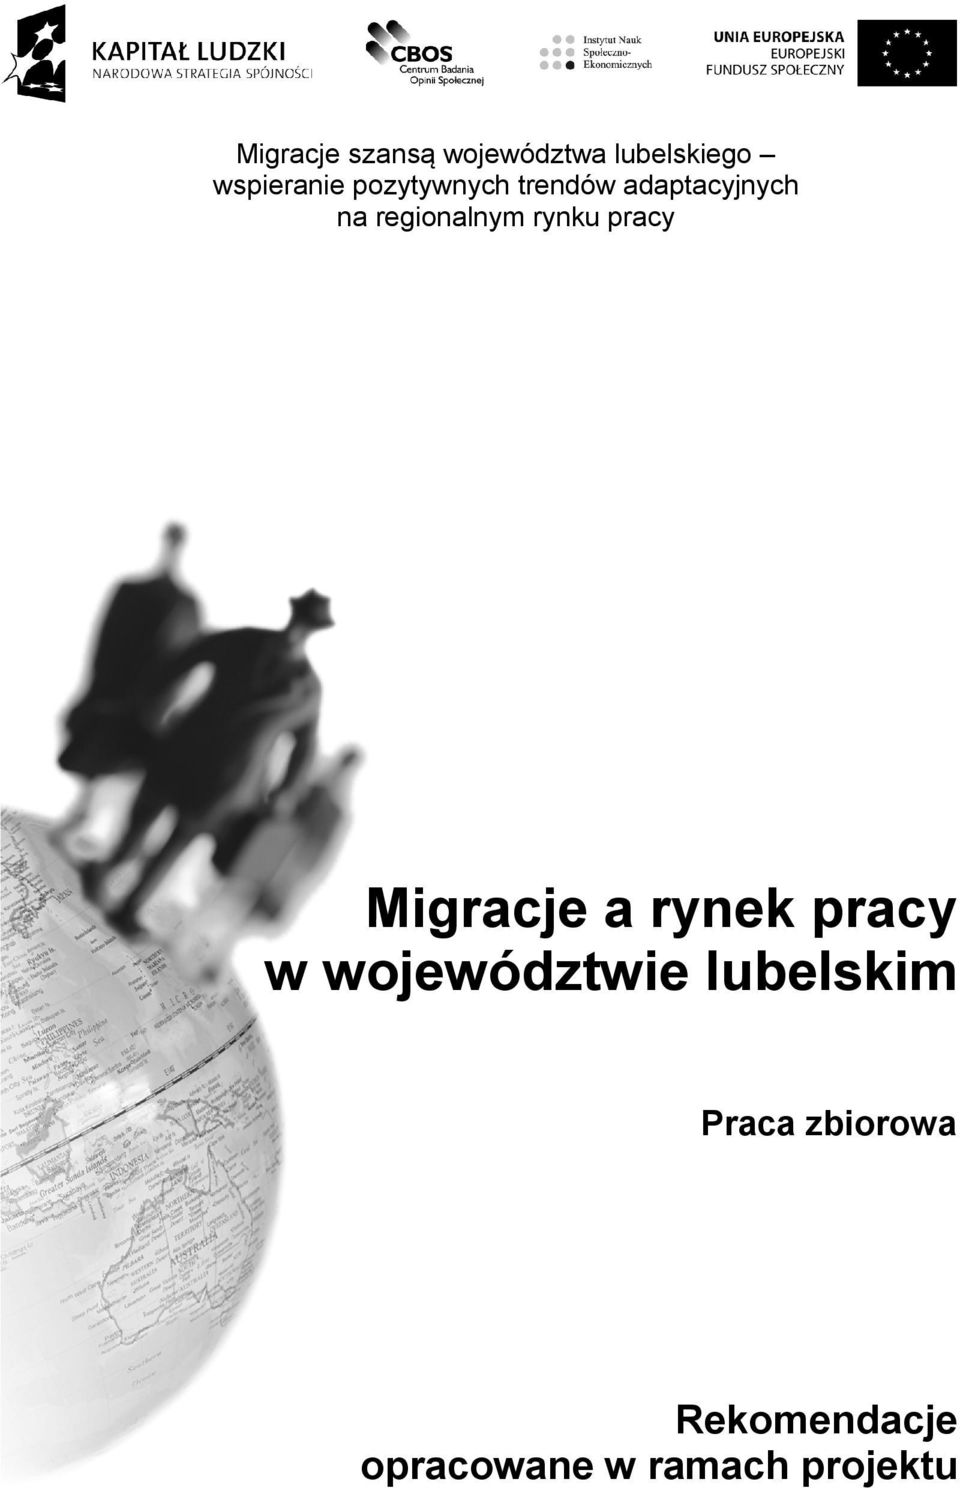 rynku pracy Migracje a rynek pracy w województwie